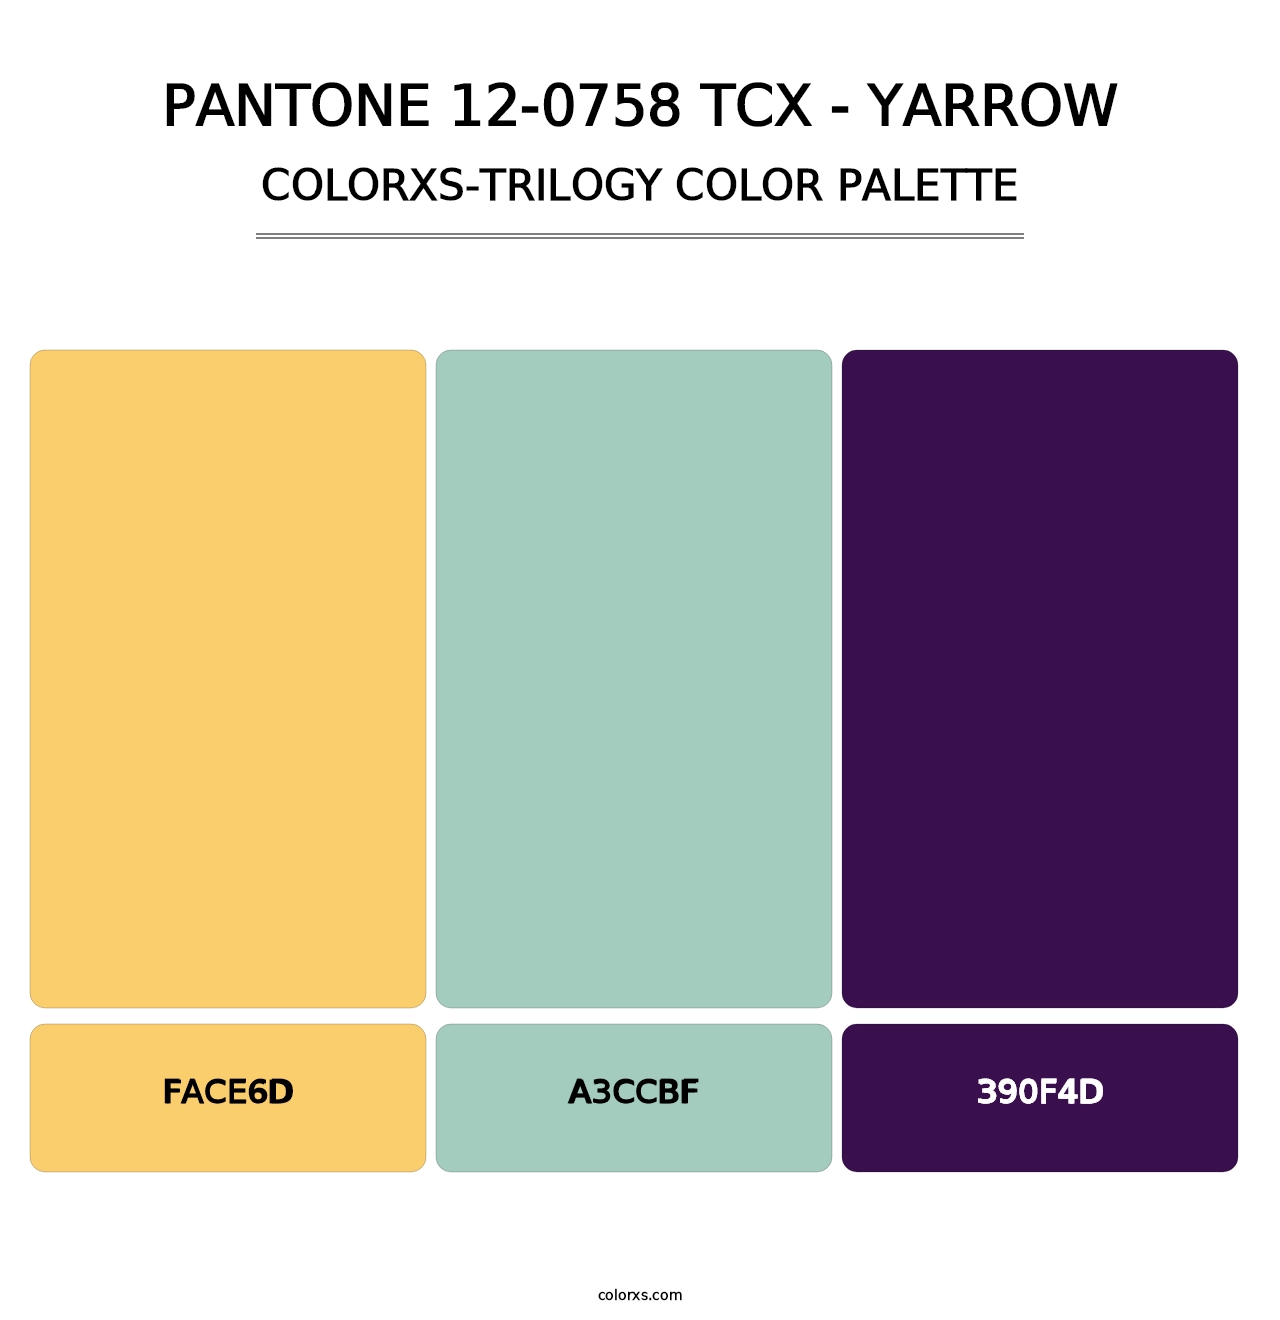 PANTONE 12-0758 TCX - Yarrow - Colorxs Trilogy Palette